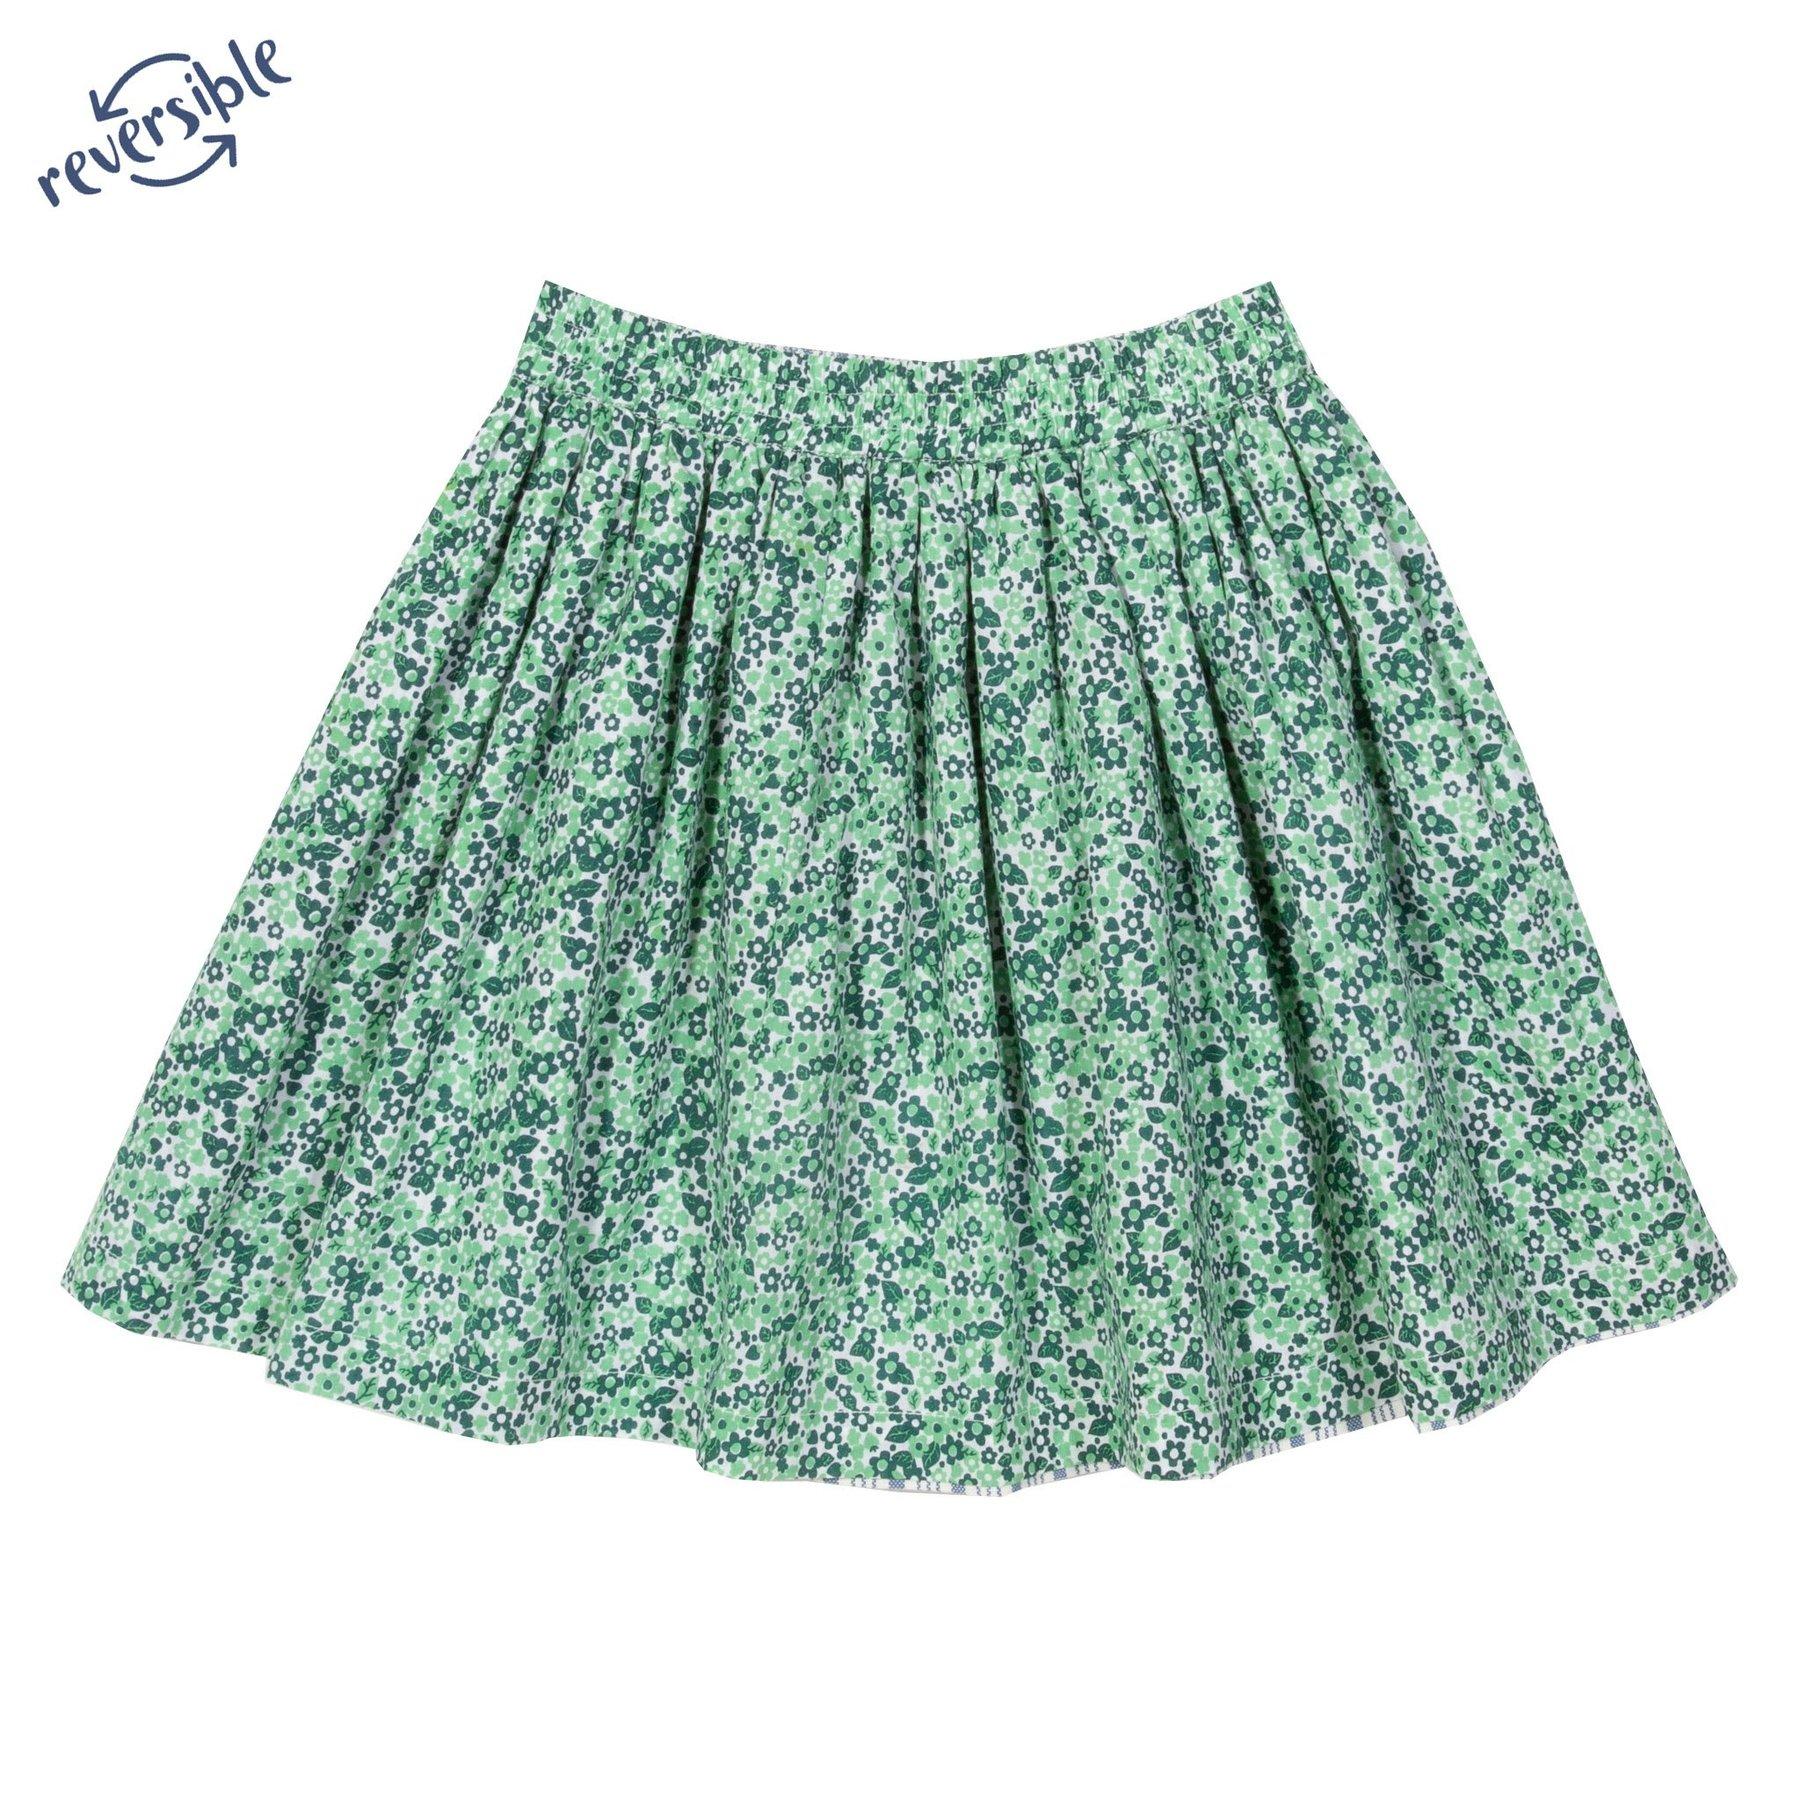 Kite Clothing blossom reversible skirt green